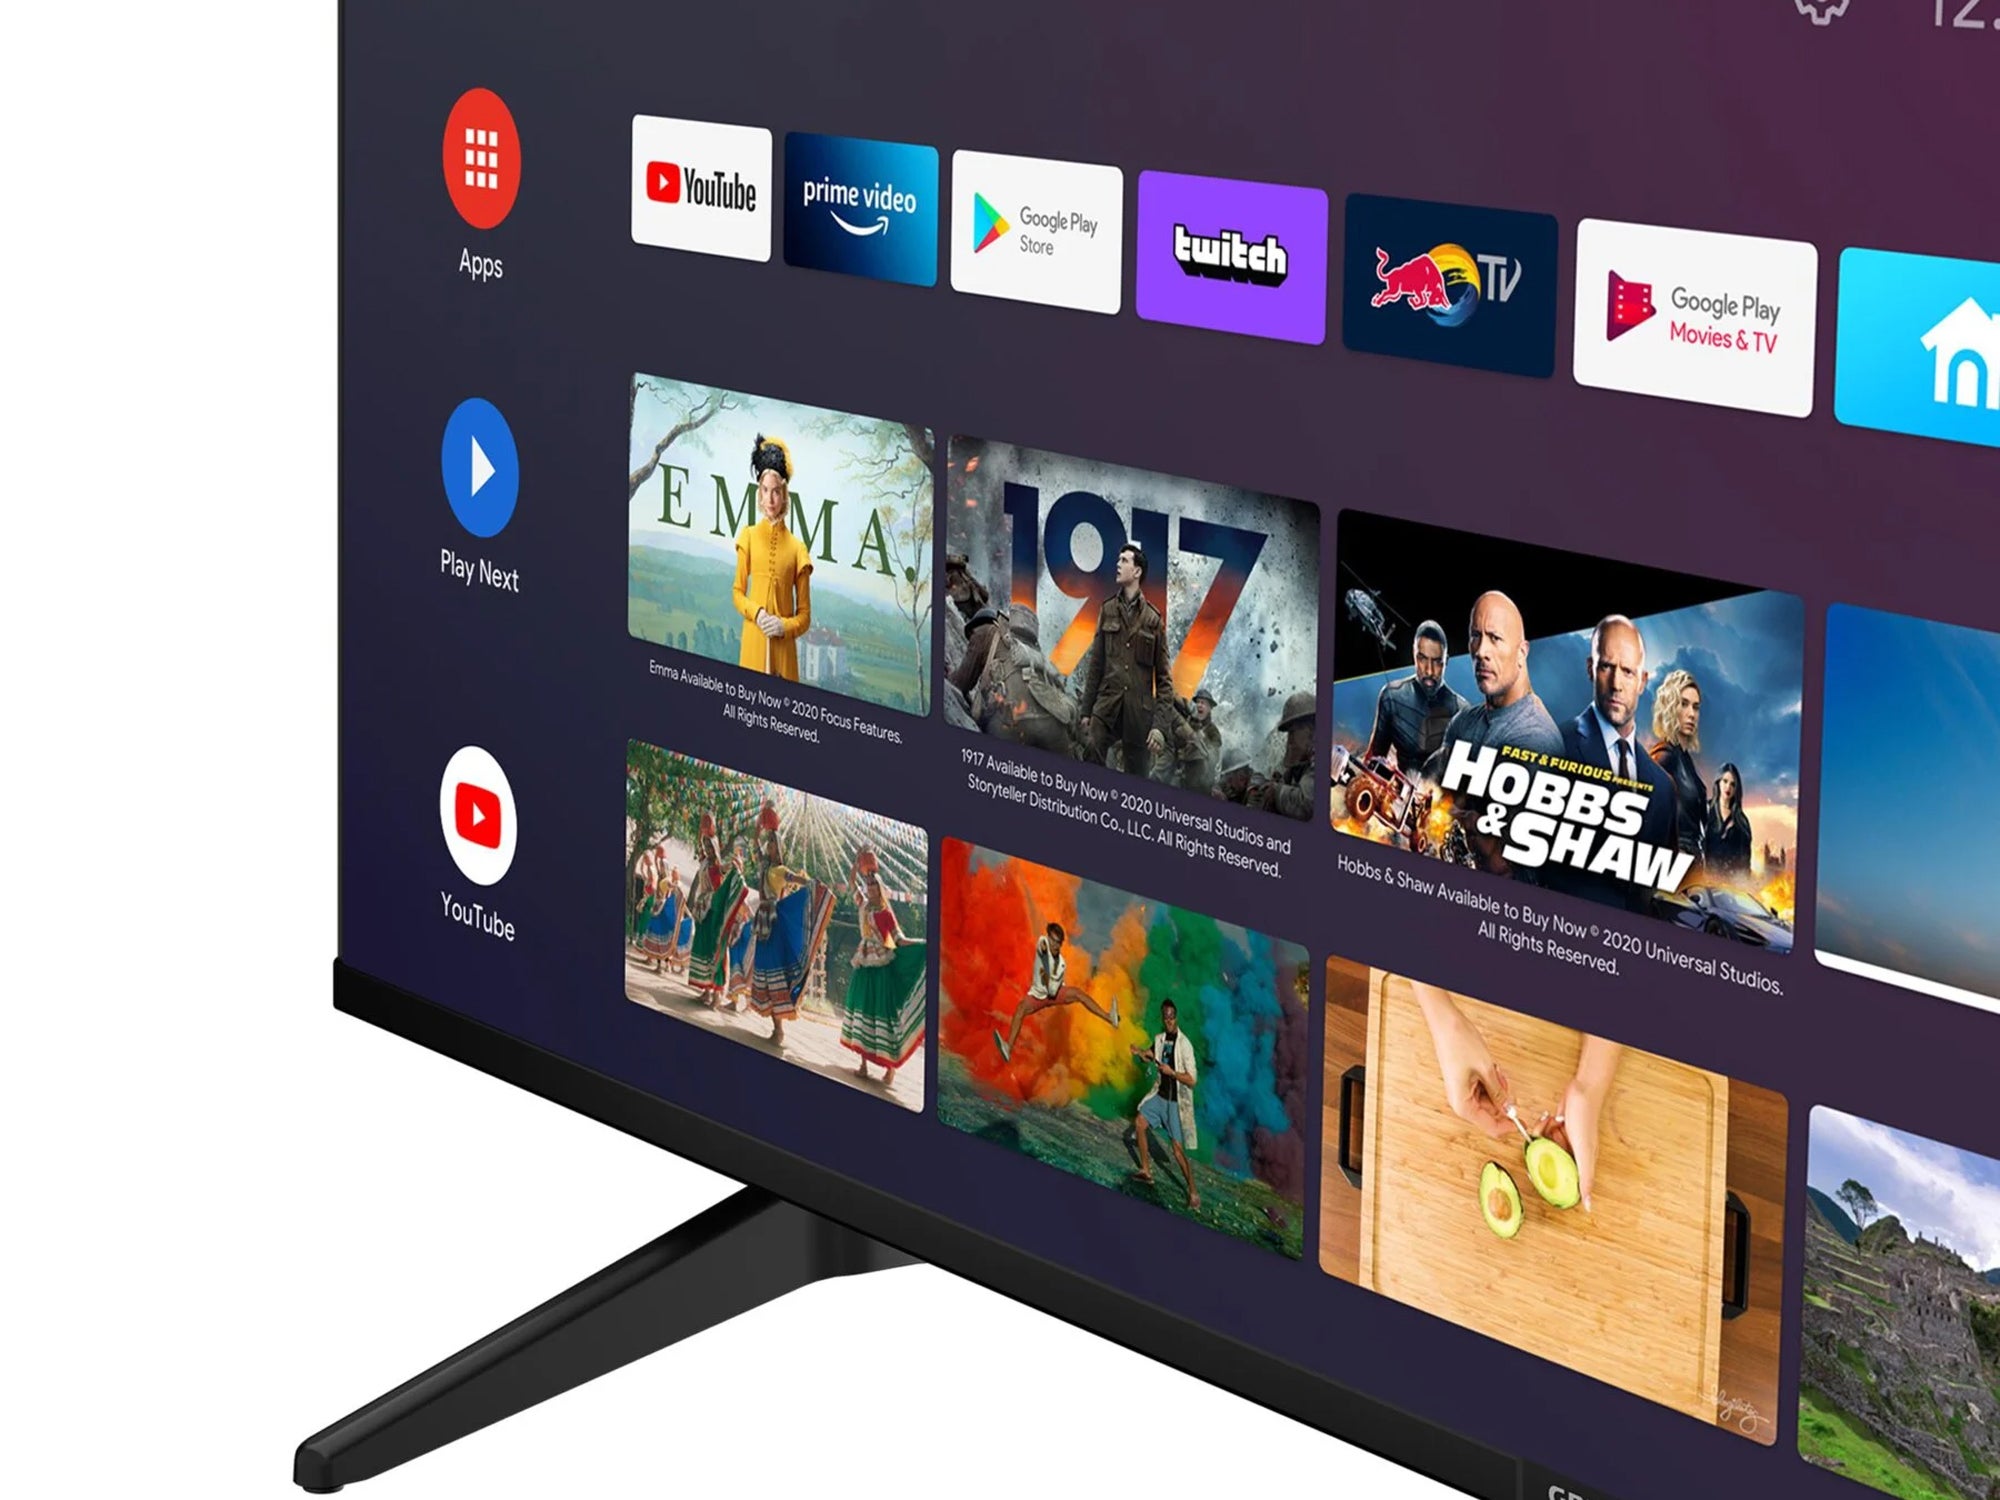 #Erst seit einem Monat auf dem Markt! Großer 4K Smart-TV kostet jetzt nur noch 400 Euro